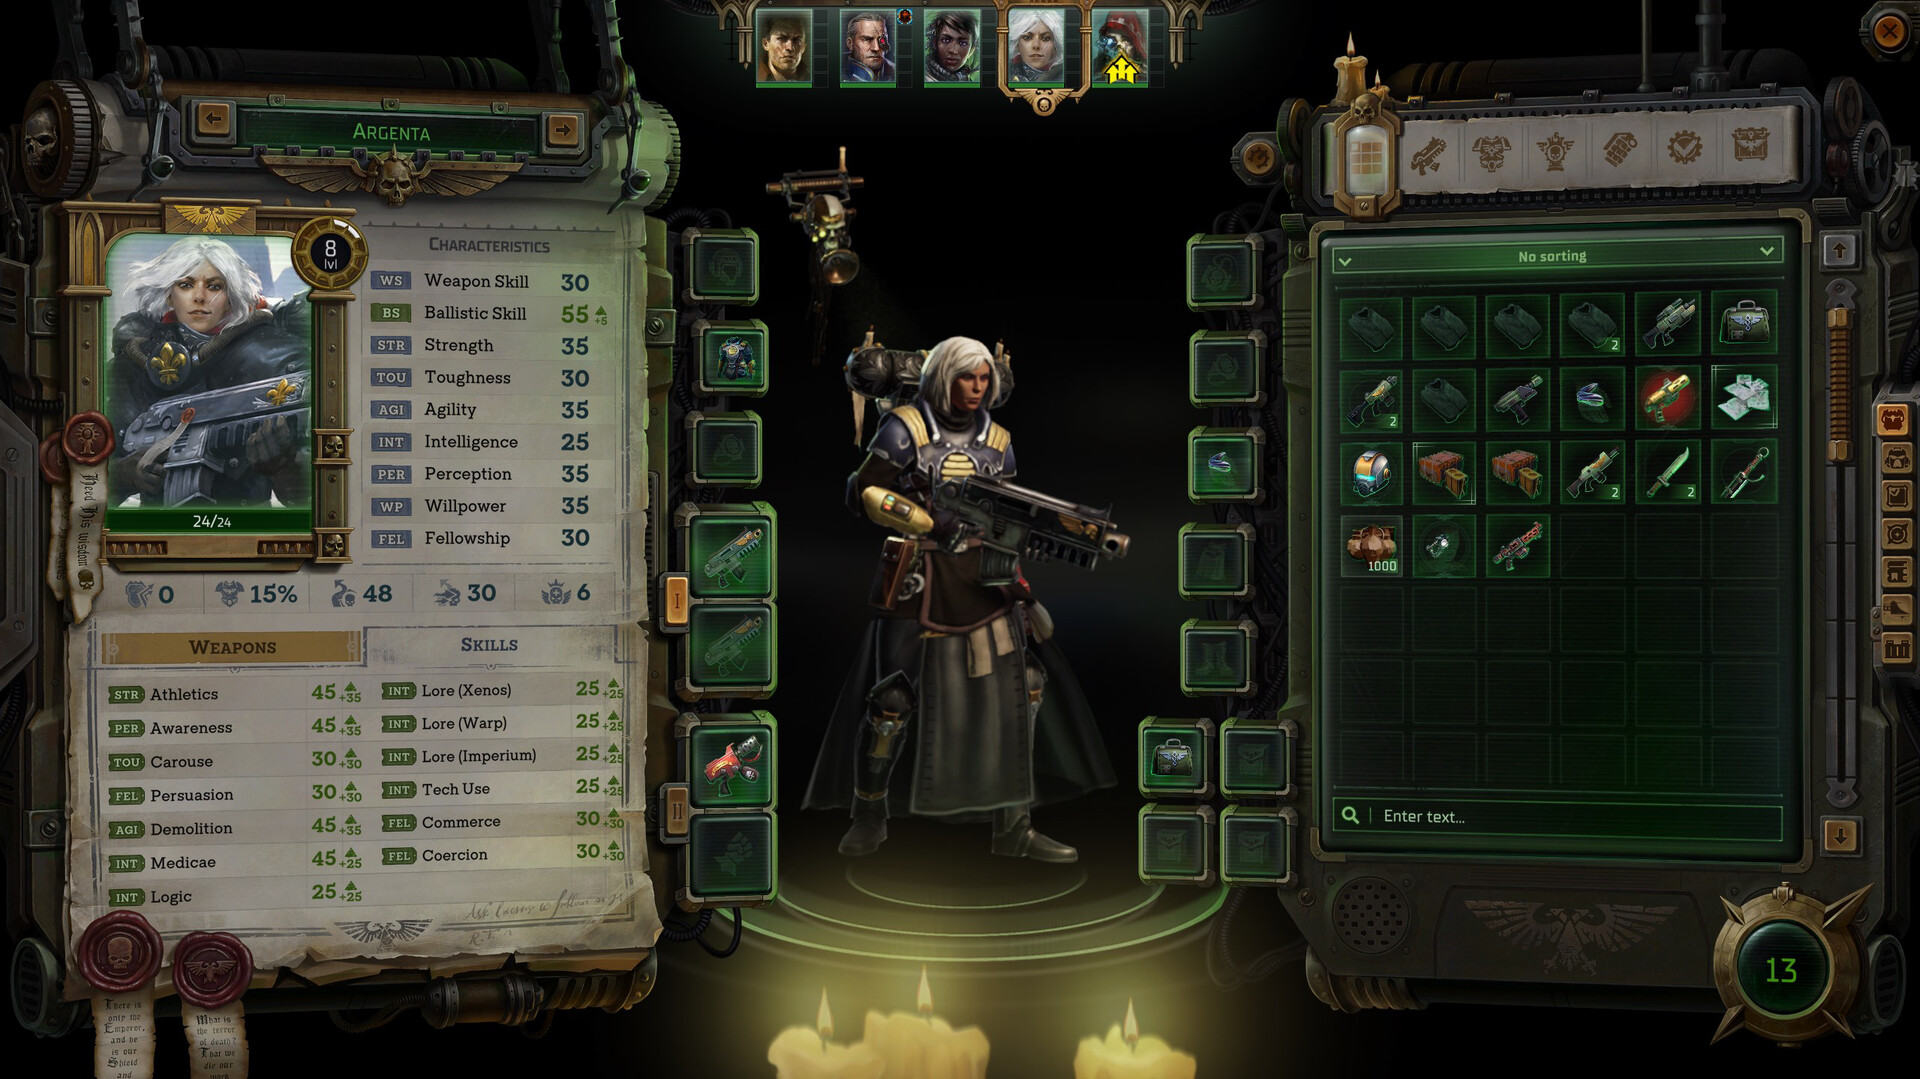 Warhammer 40,000: Rogue Trader Voidfarer Edition Steam Account